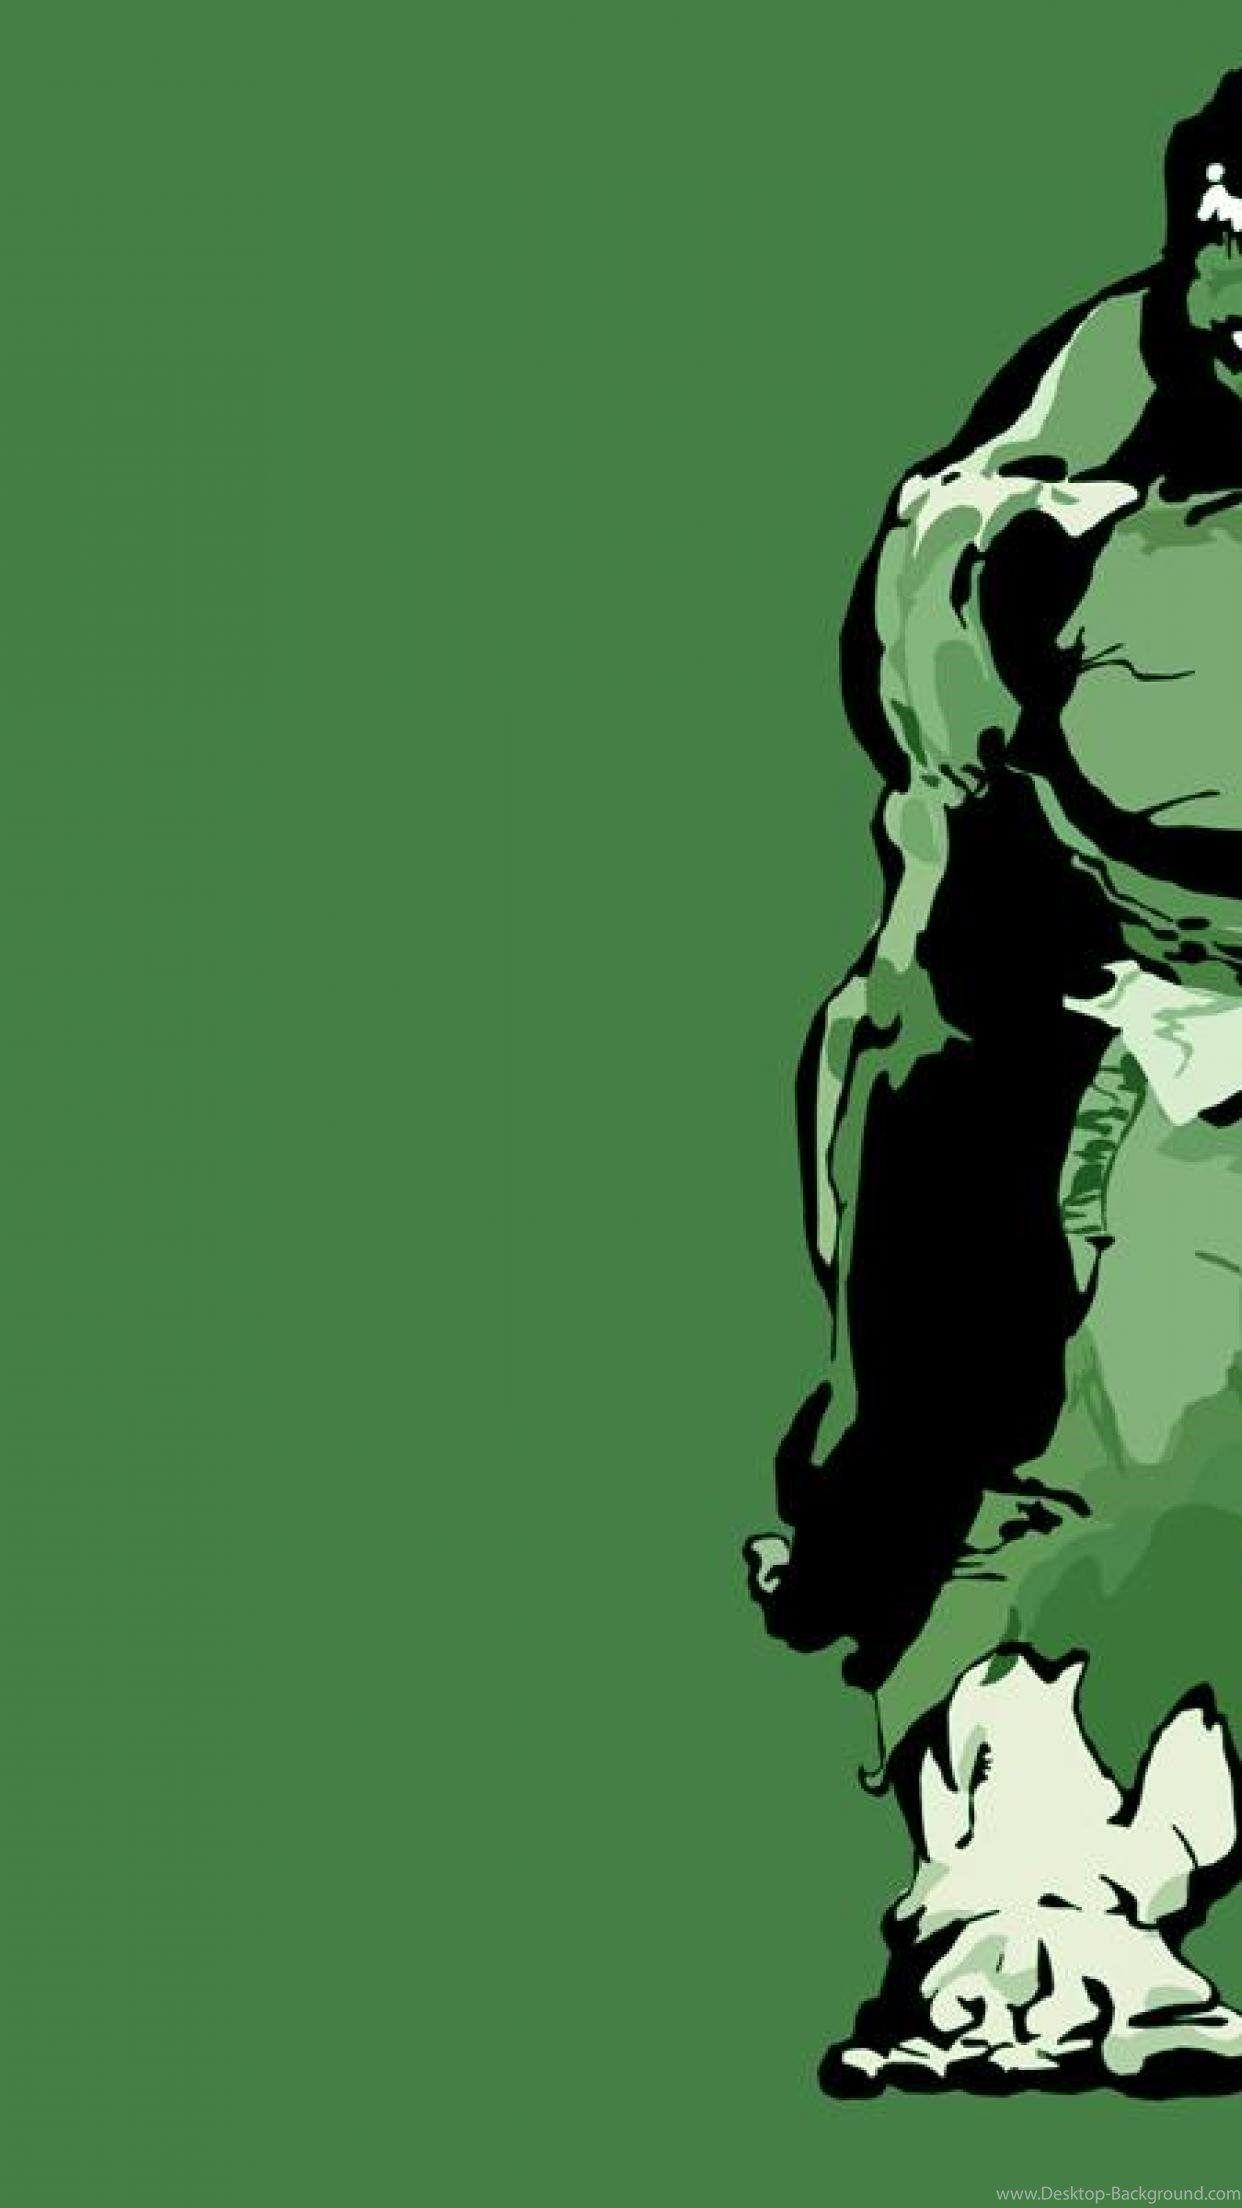 40 Gambar Wallpaper for Iphone Hulk terbaru 2020